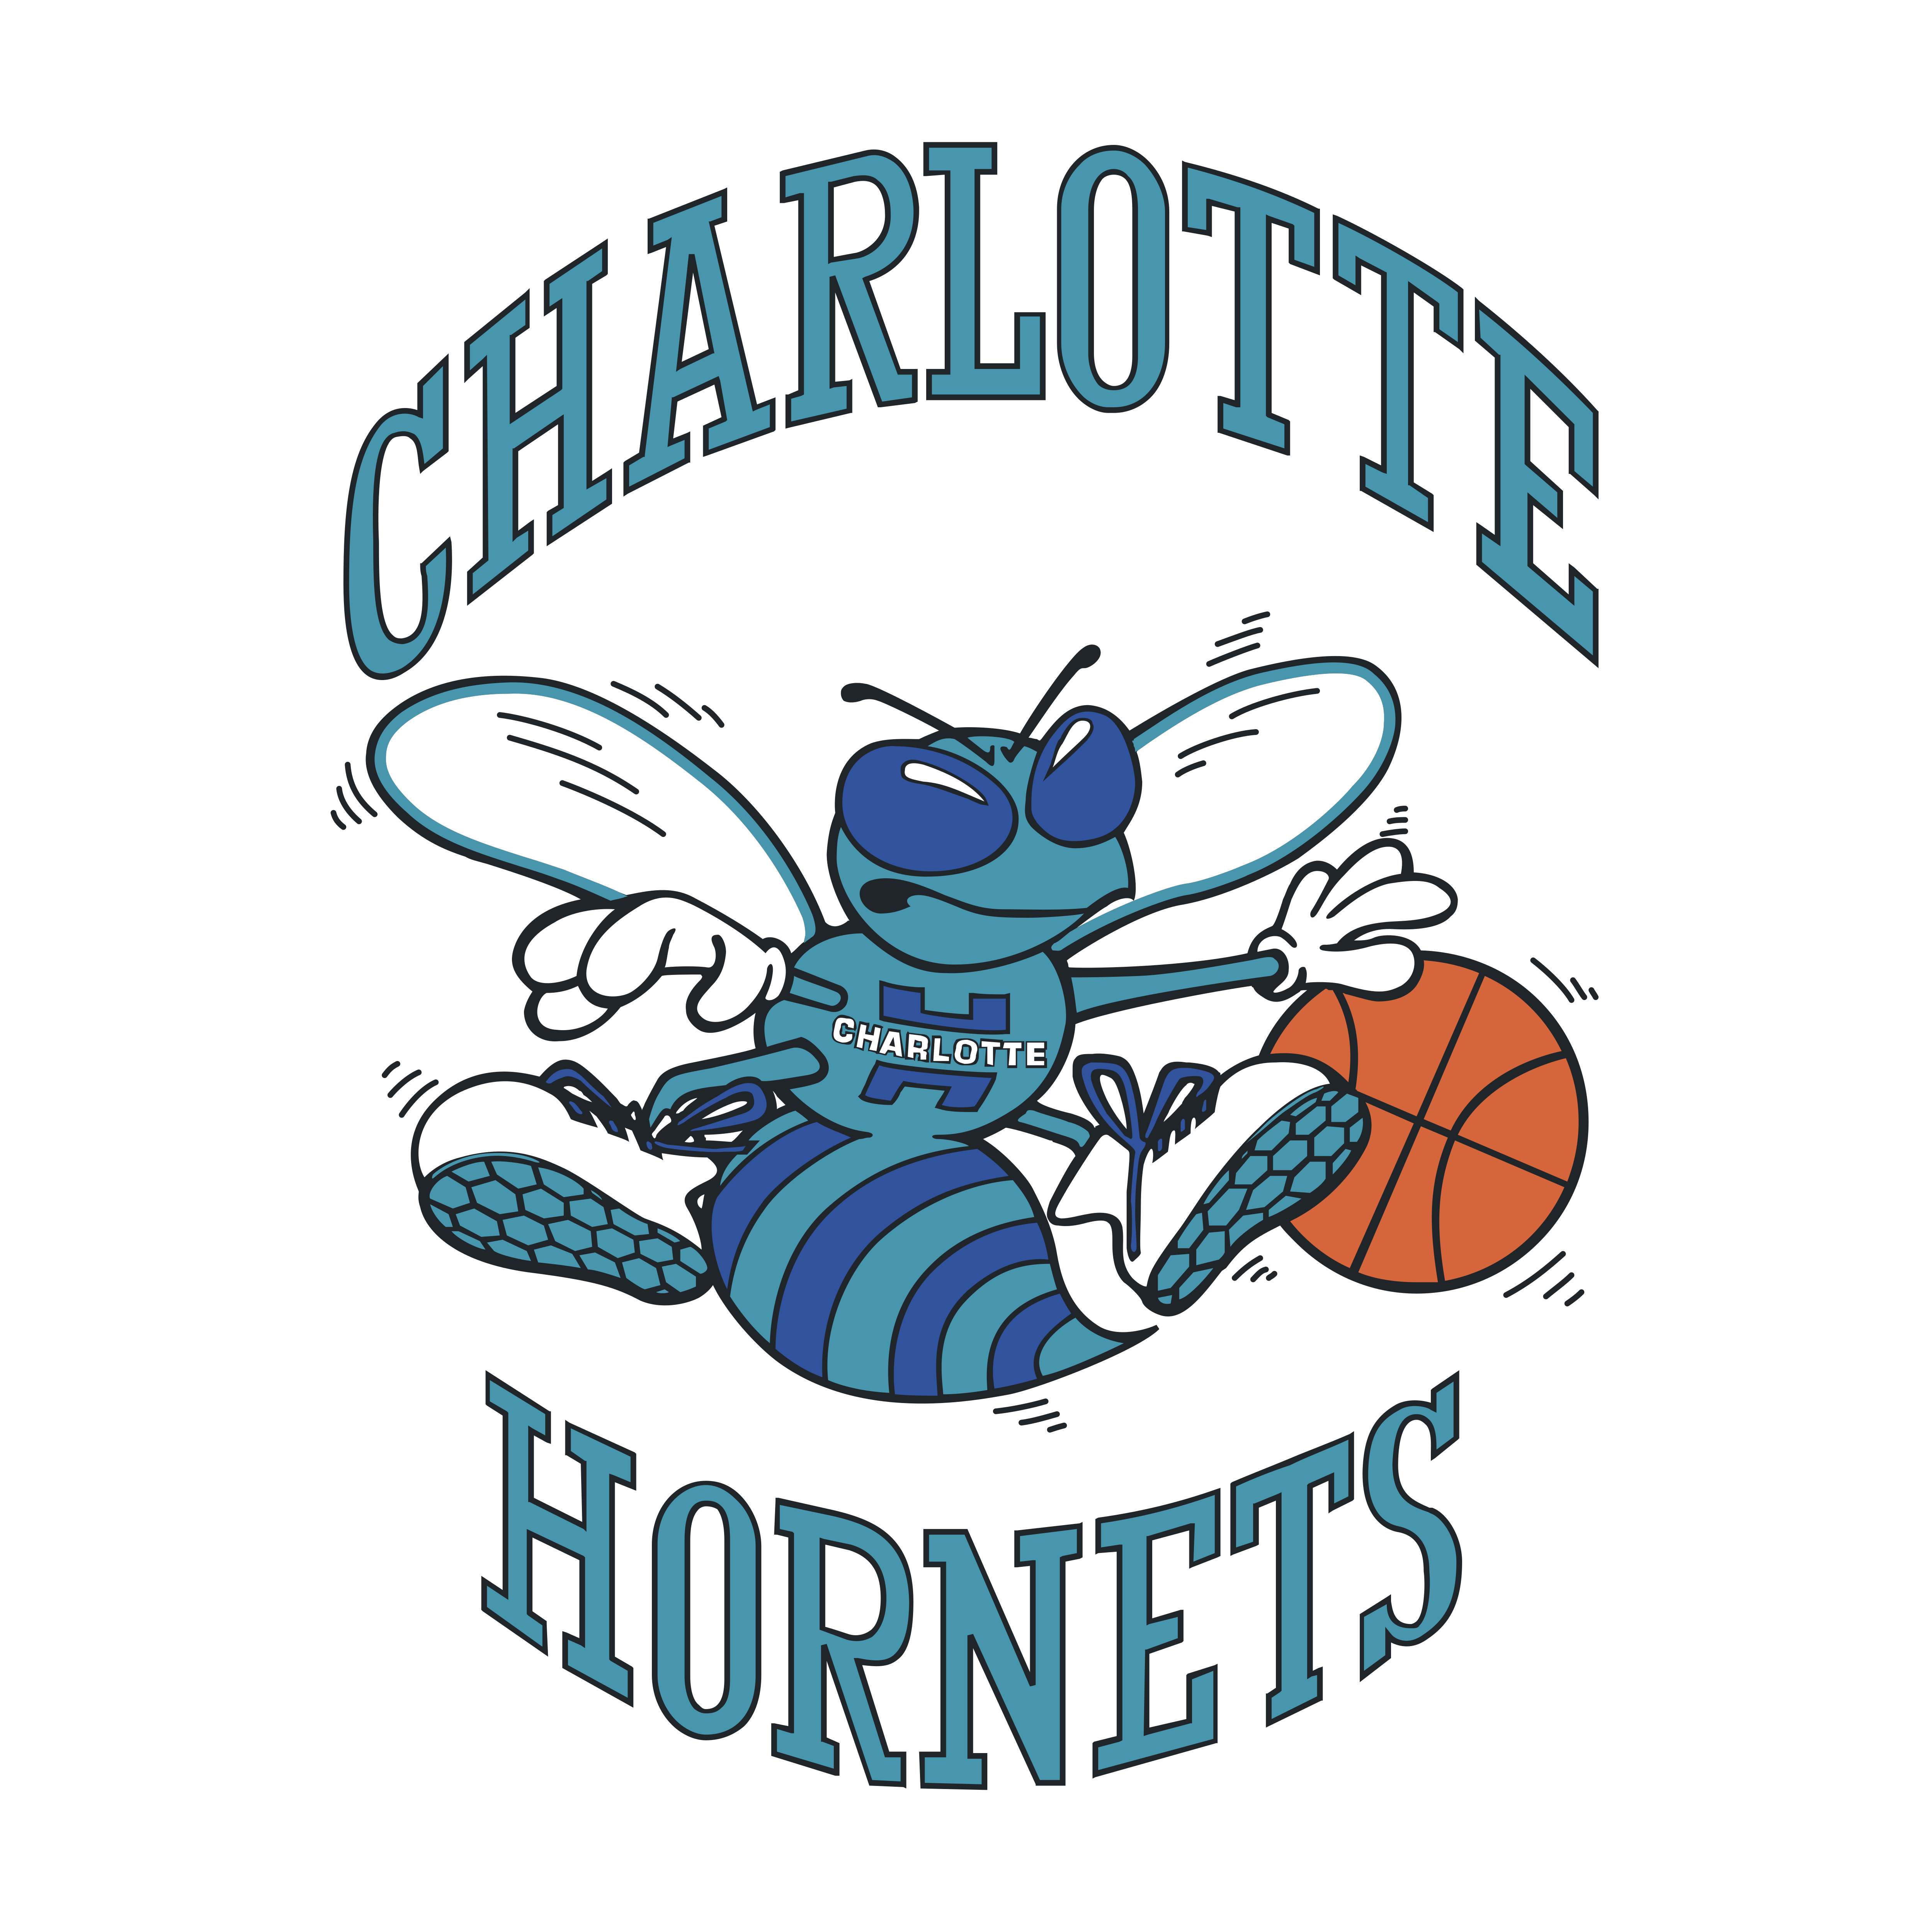 Hornets Logo - Charlotte Hornets – Logos Download